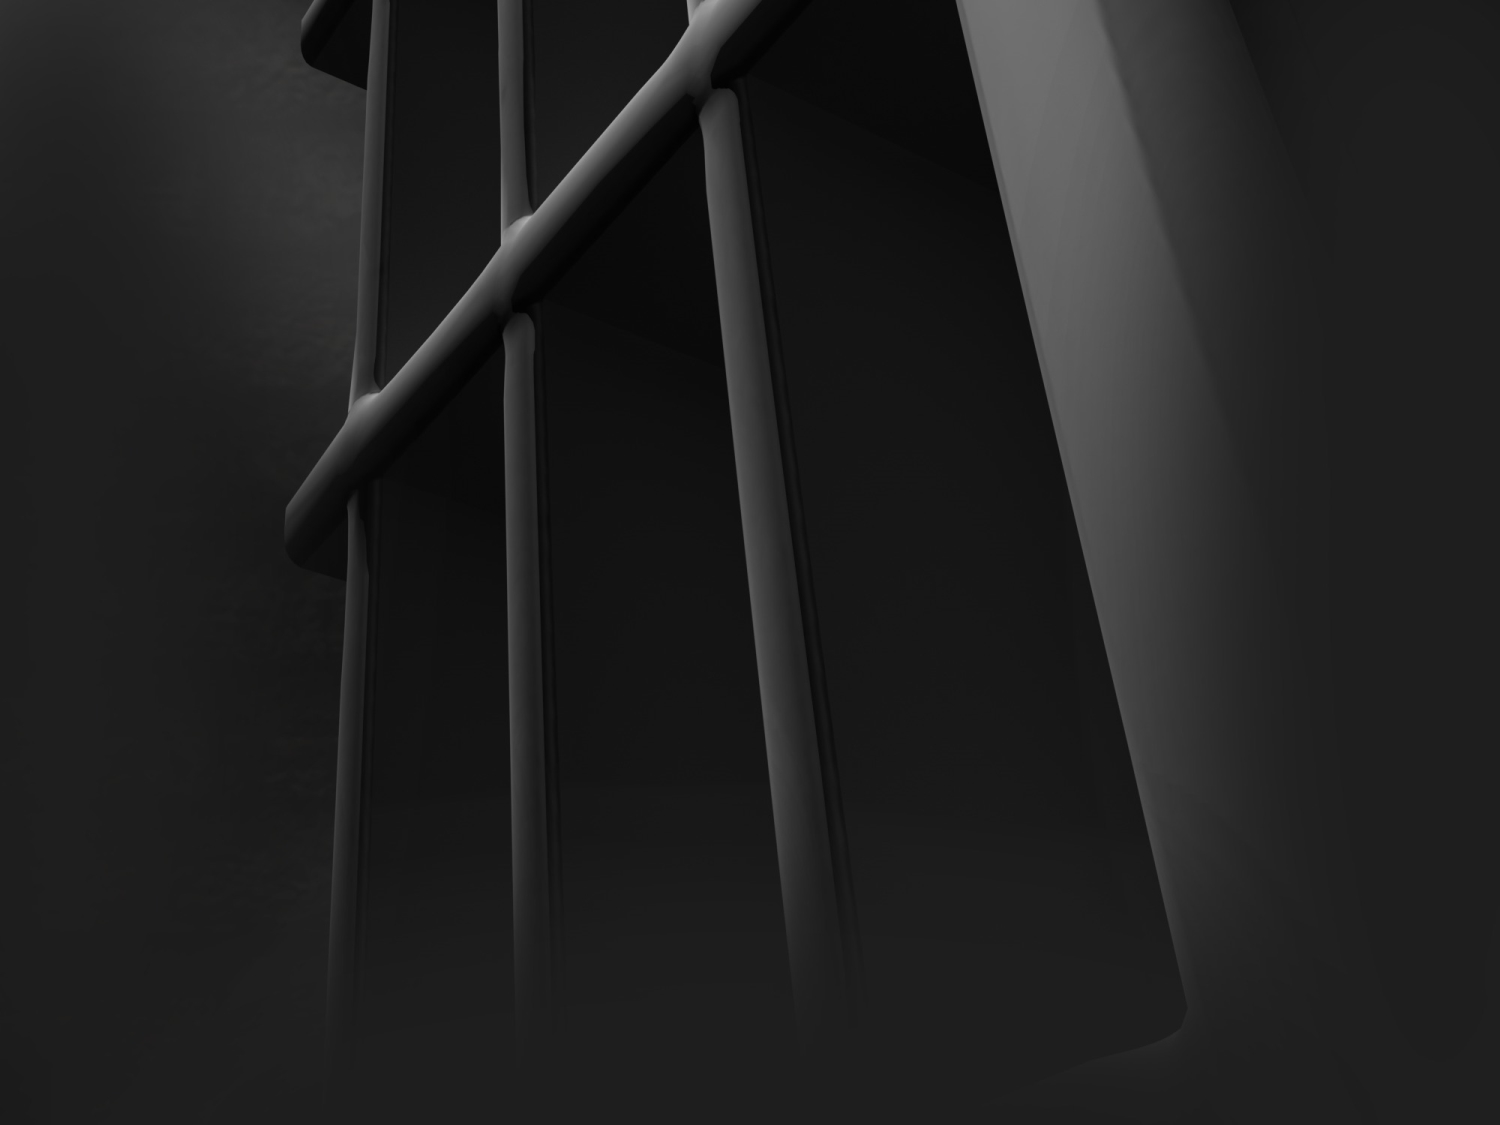 Barras de la celda de una prisión